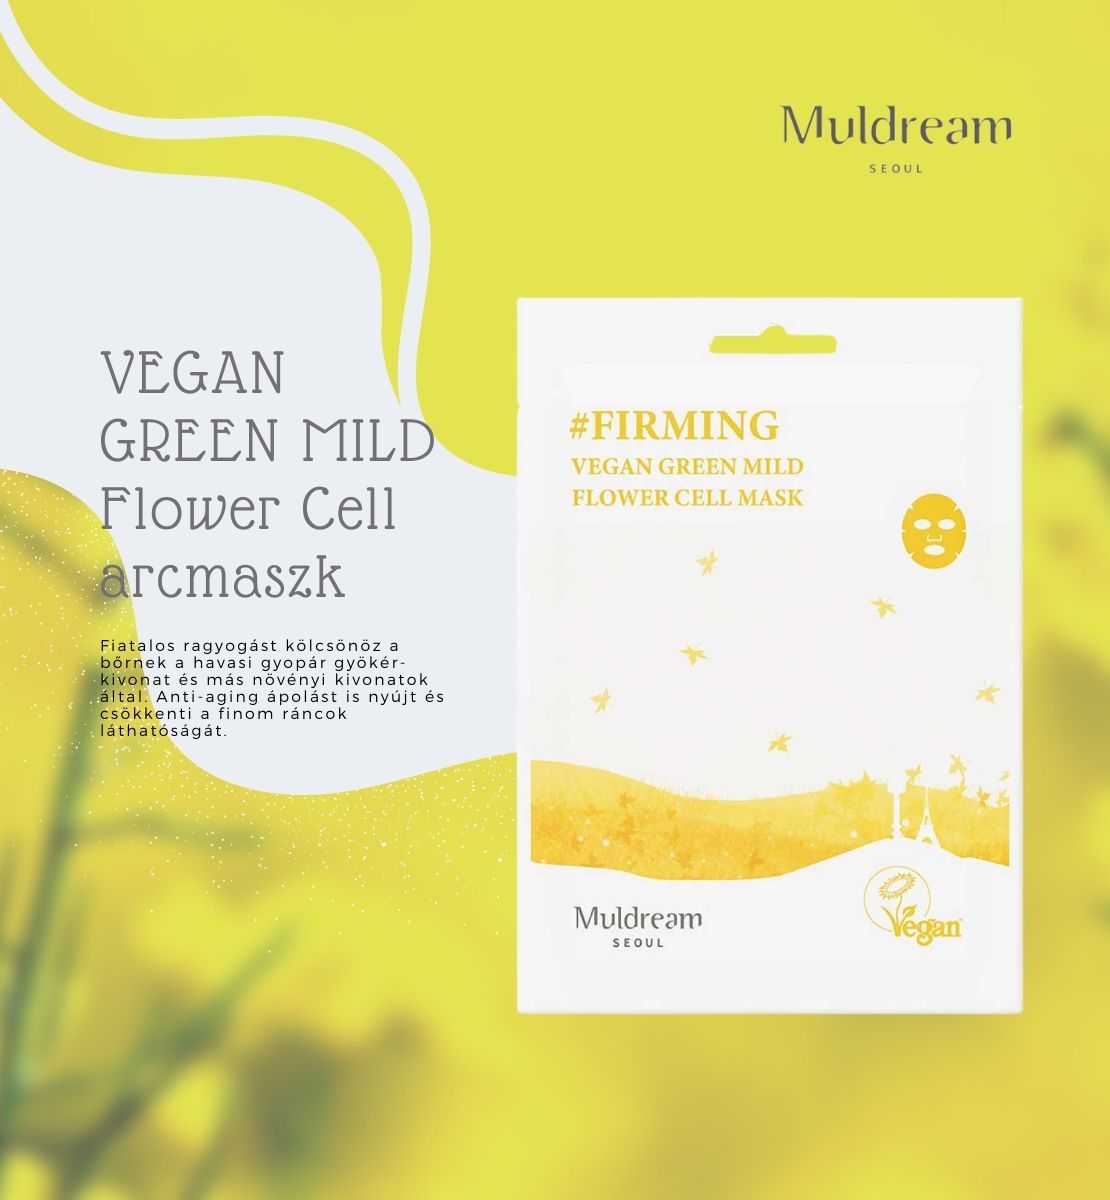 Muldream -vegan-green-mild-Flower-cell-arcmaszk-leiras